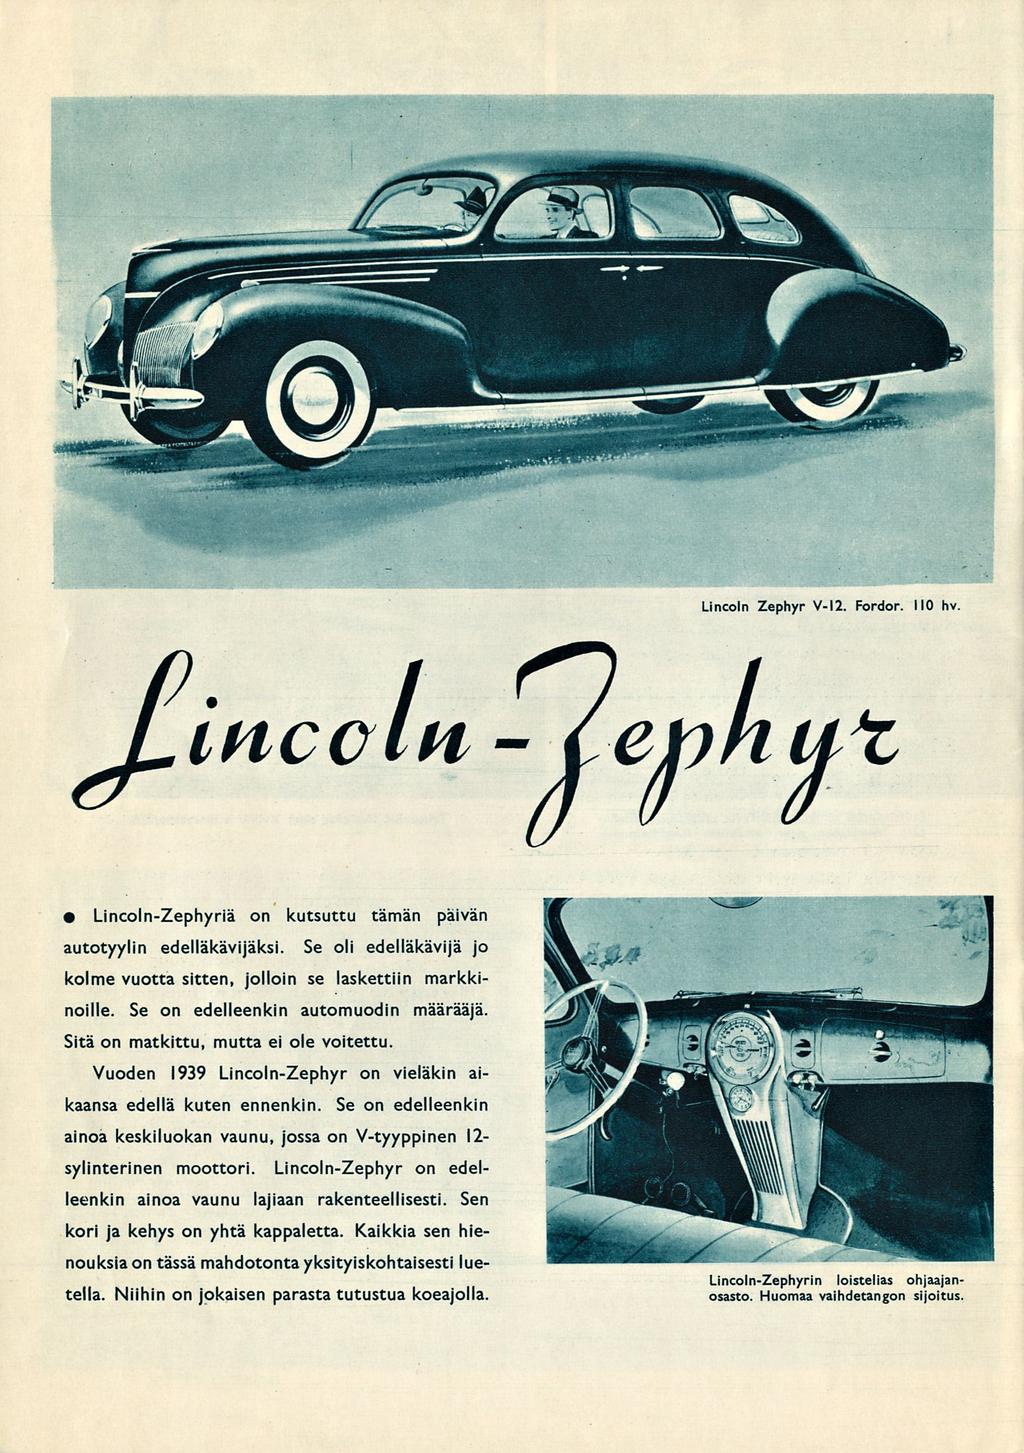 Lincoln Zephyr V-12. Fordor. 110 hv Lincoln - jcephut Lincoln-Zephyriä on kutsuttu tämän päivän autoty/lin edelläkävijäksi.